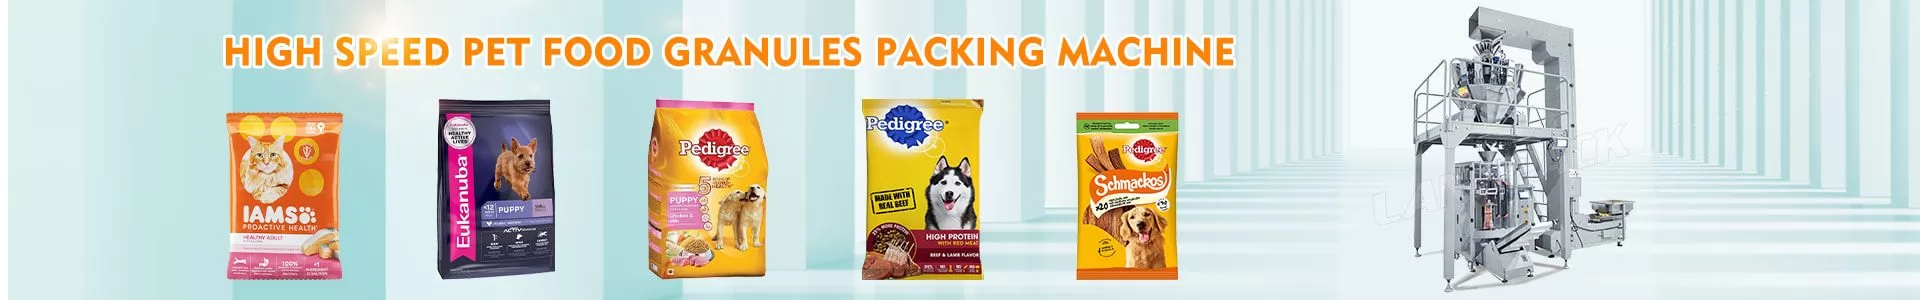 Máquina empacadora de alimentos para mascotas